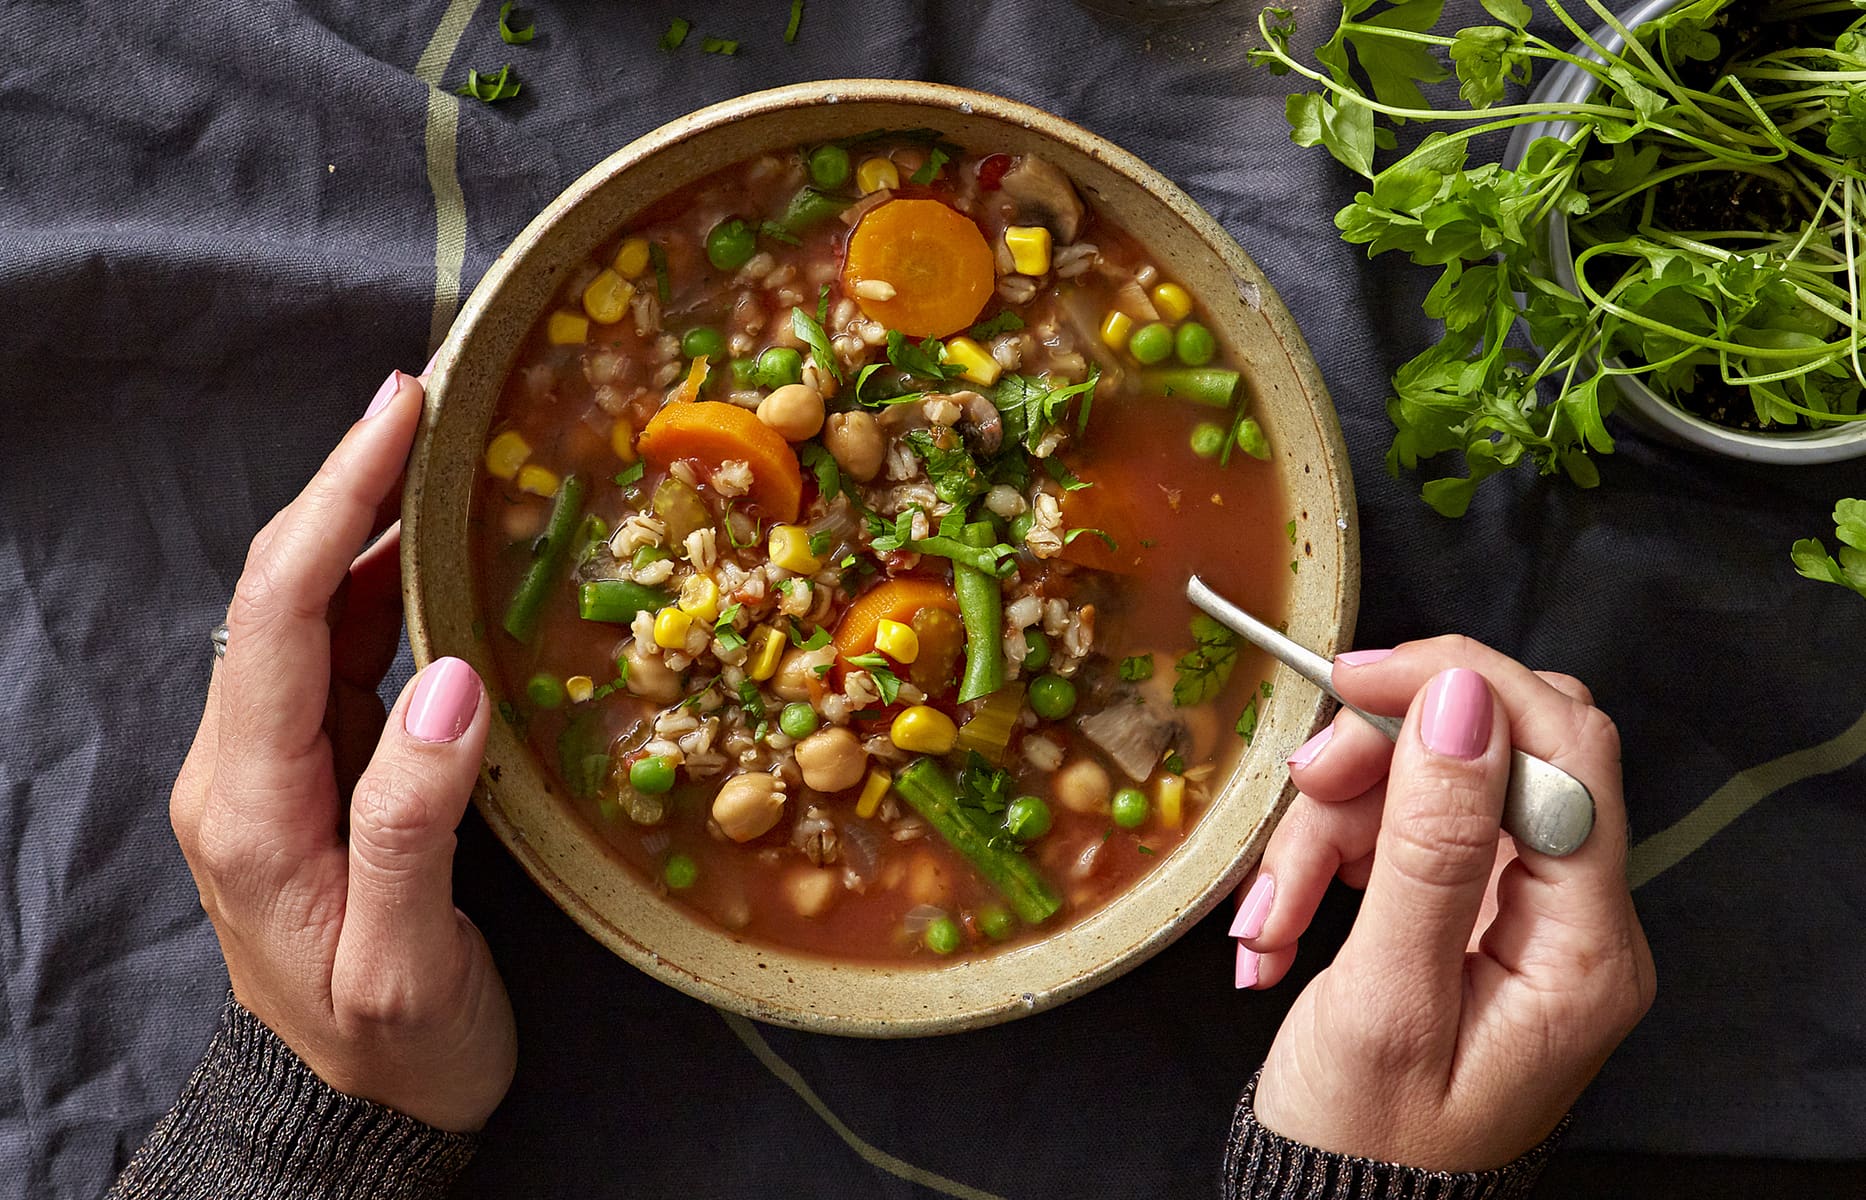 https://media.healthyfood.com/wp-content/uploads/2018/04/Vegetable-barley-soup.jpg